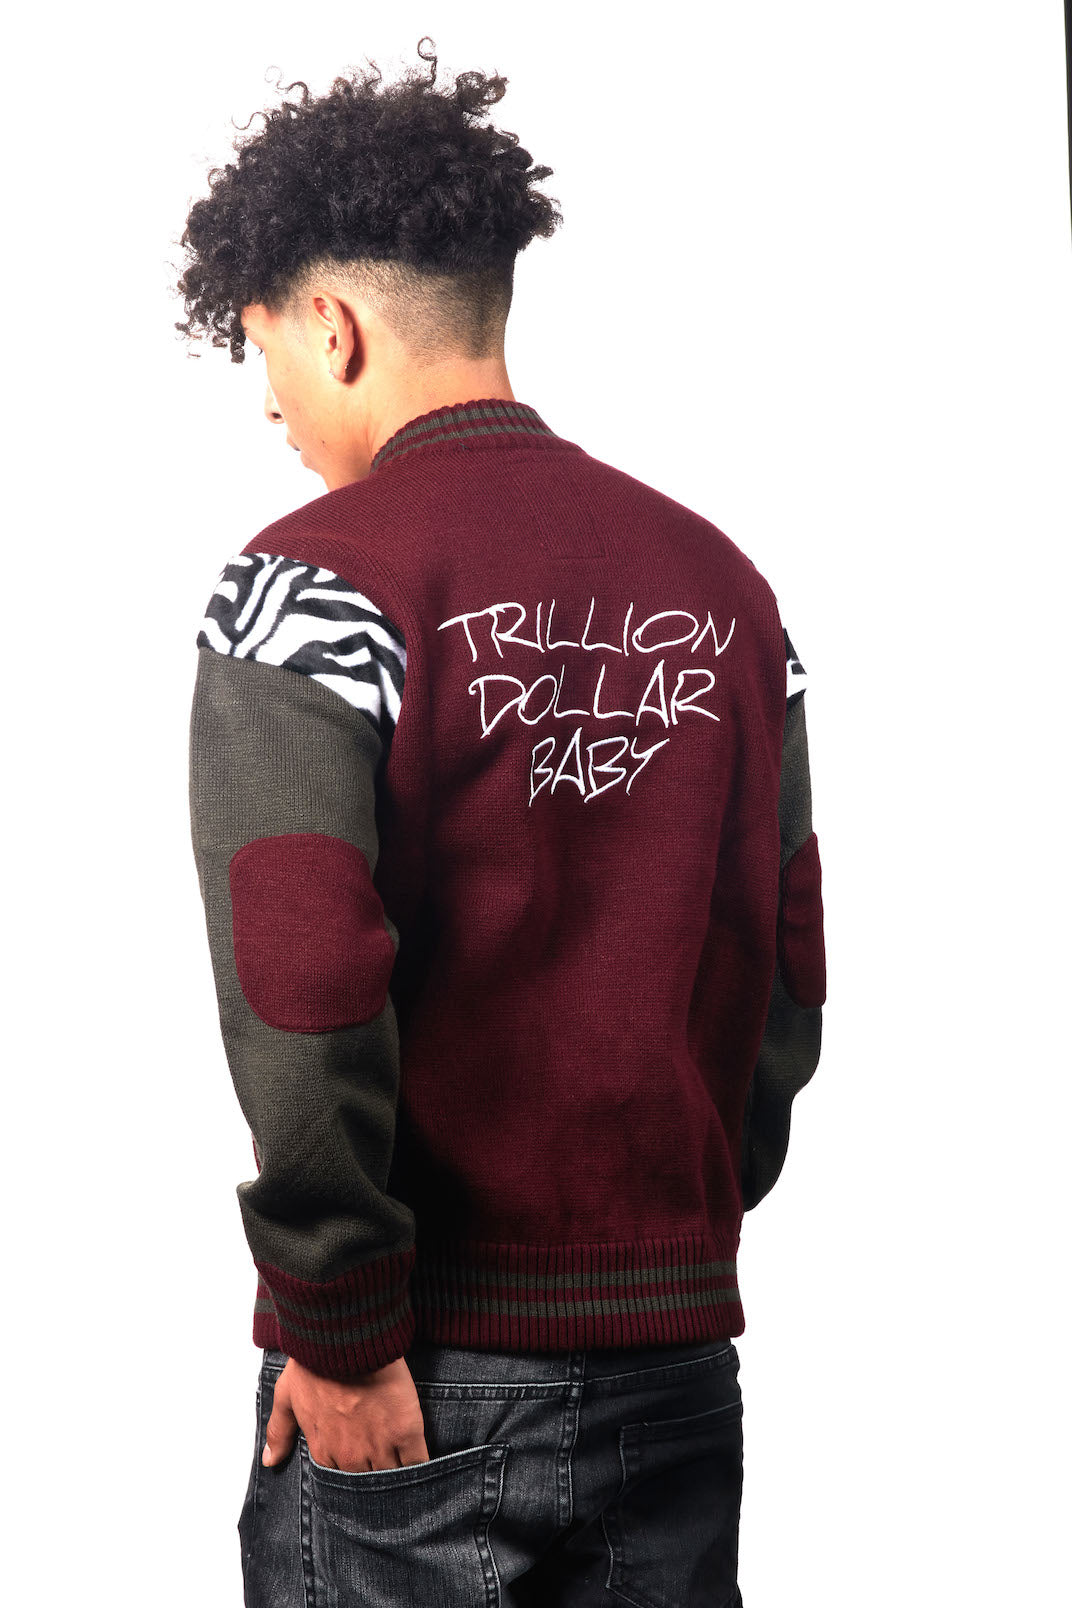 Trillion Dollar Baby Knitted Varsity Jacket